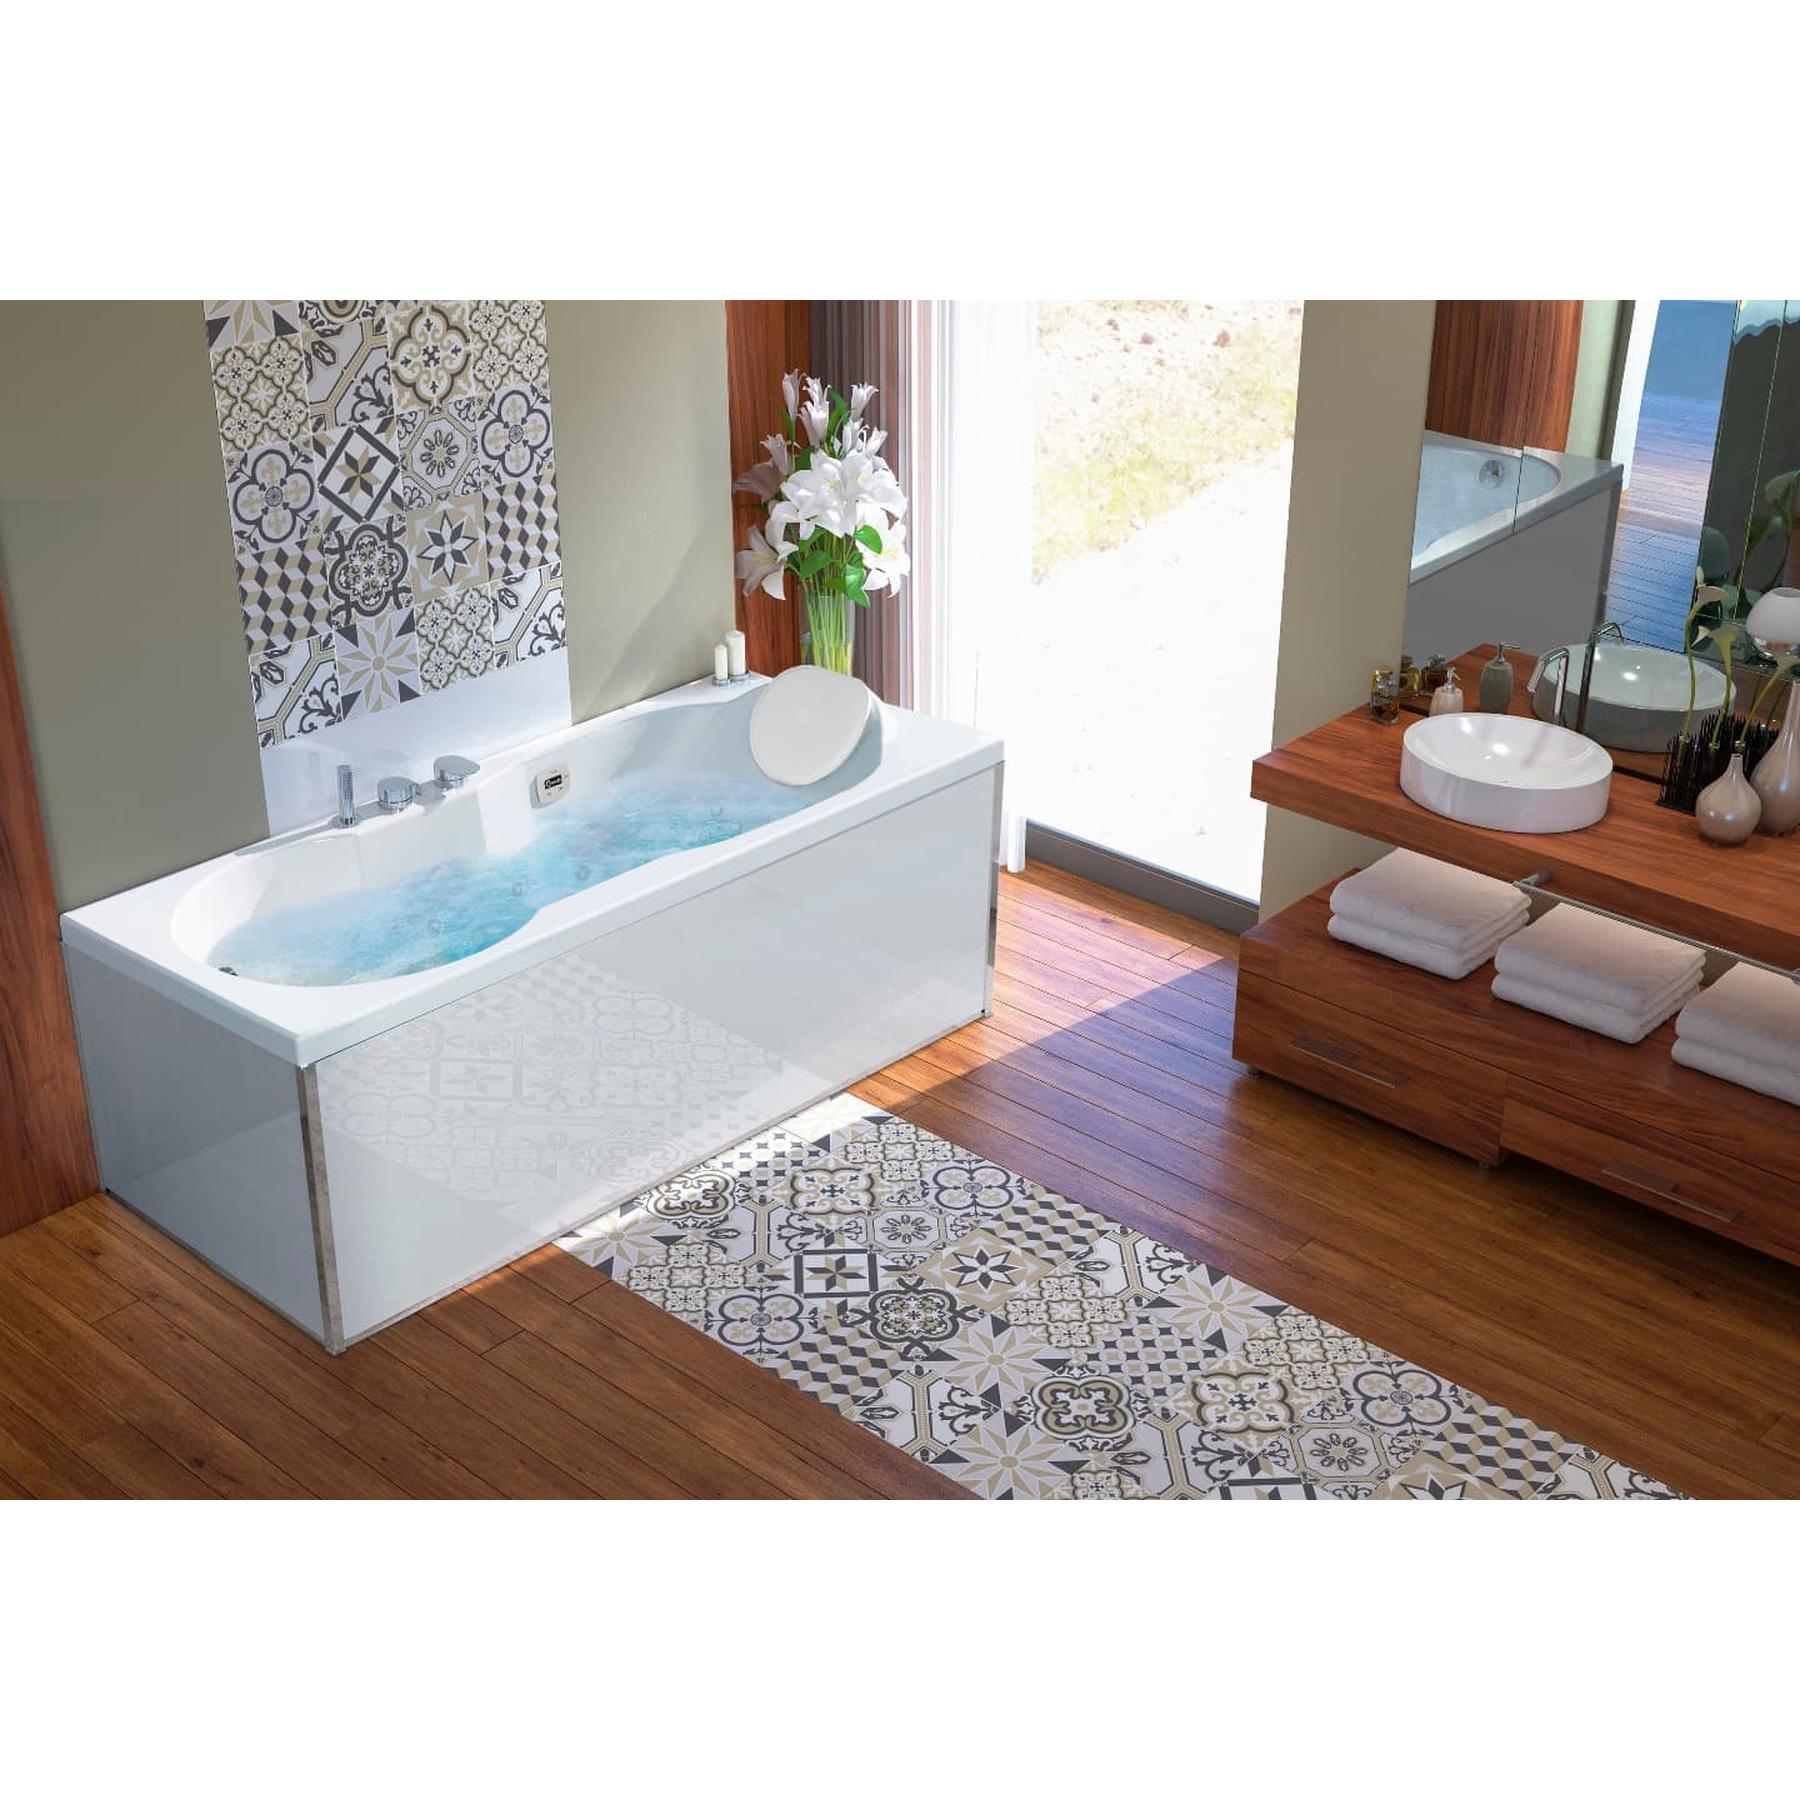 Tablier de baignoire en verre blanc 170 compatible avec toutes les baignoires KINEDO rectangulaires sauf modèles STAR et SAMBA 